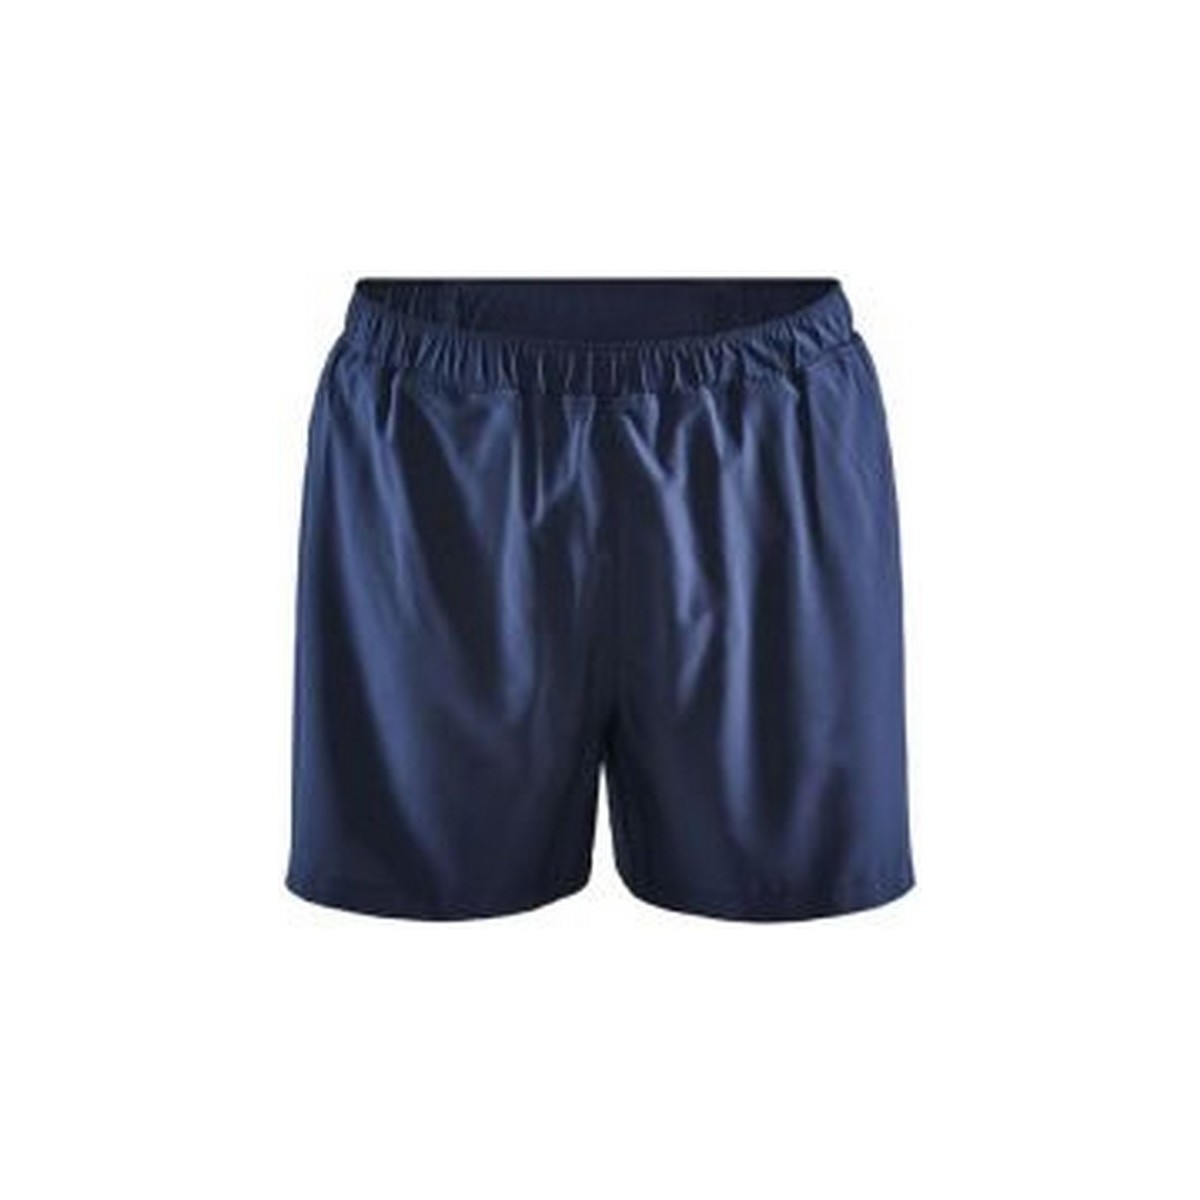 textil Hombre Shorts / Bermudas Craft ADV Essence Azul